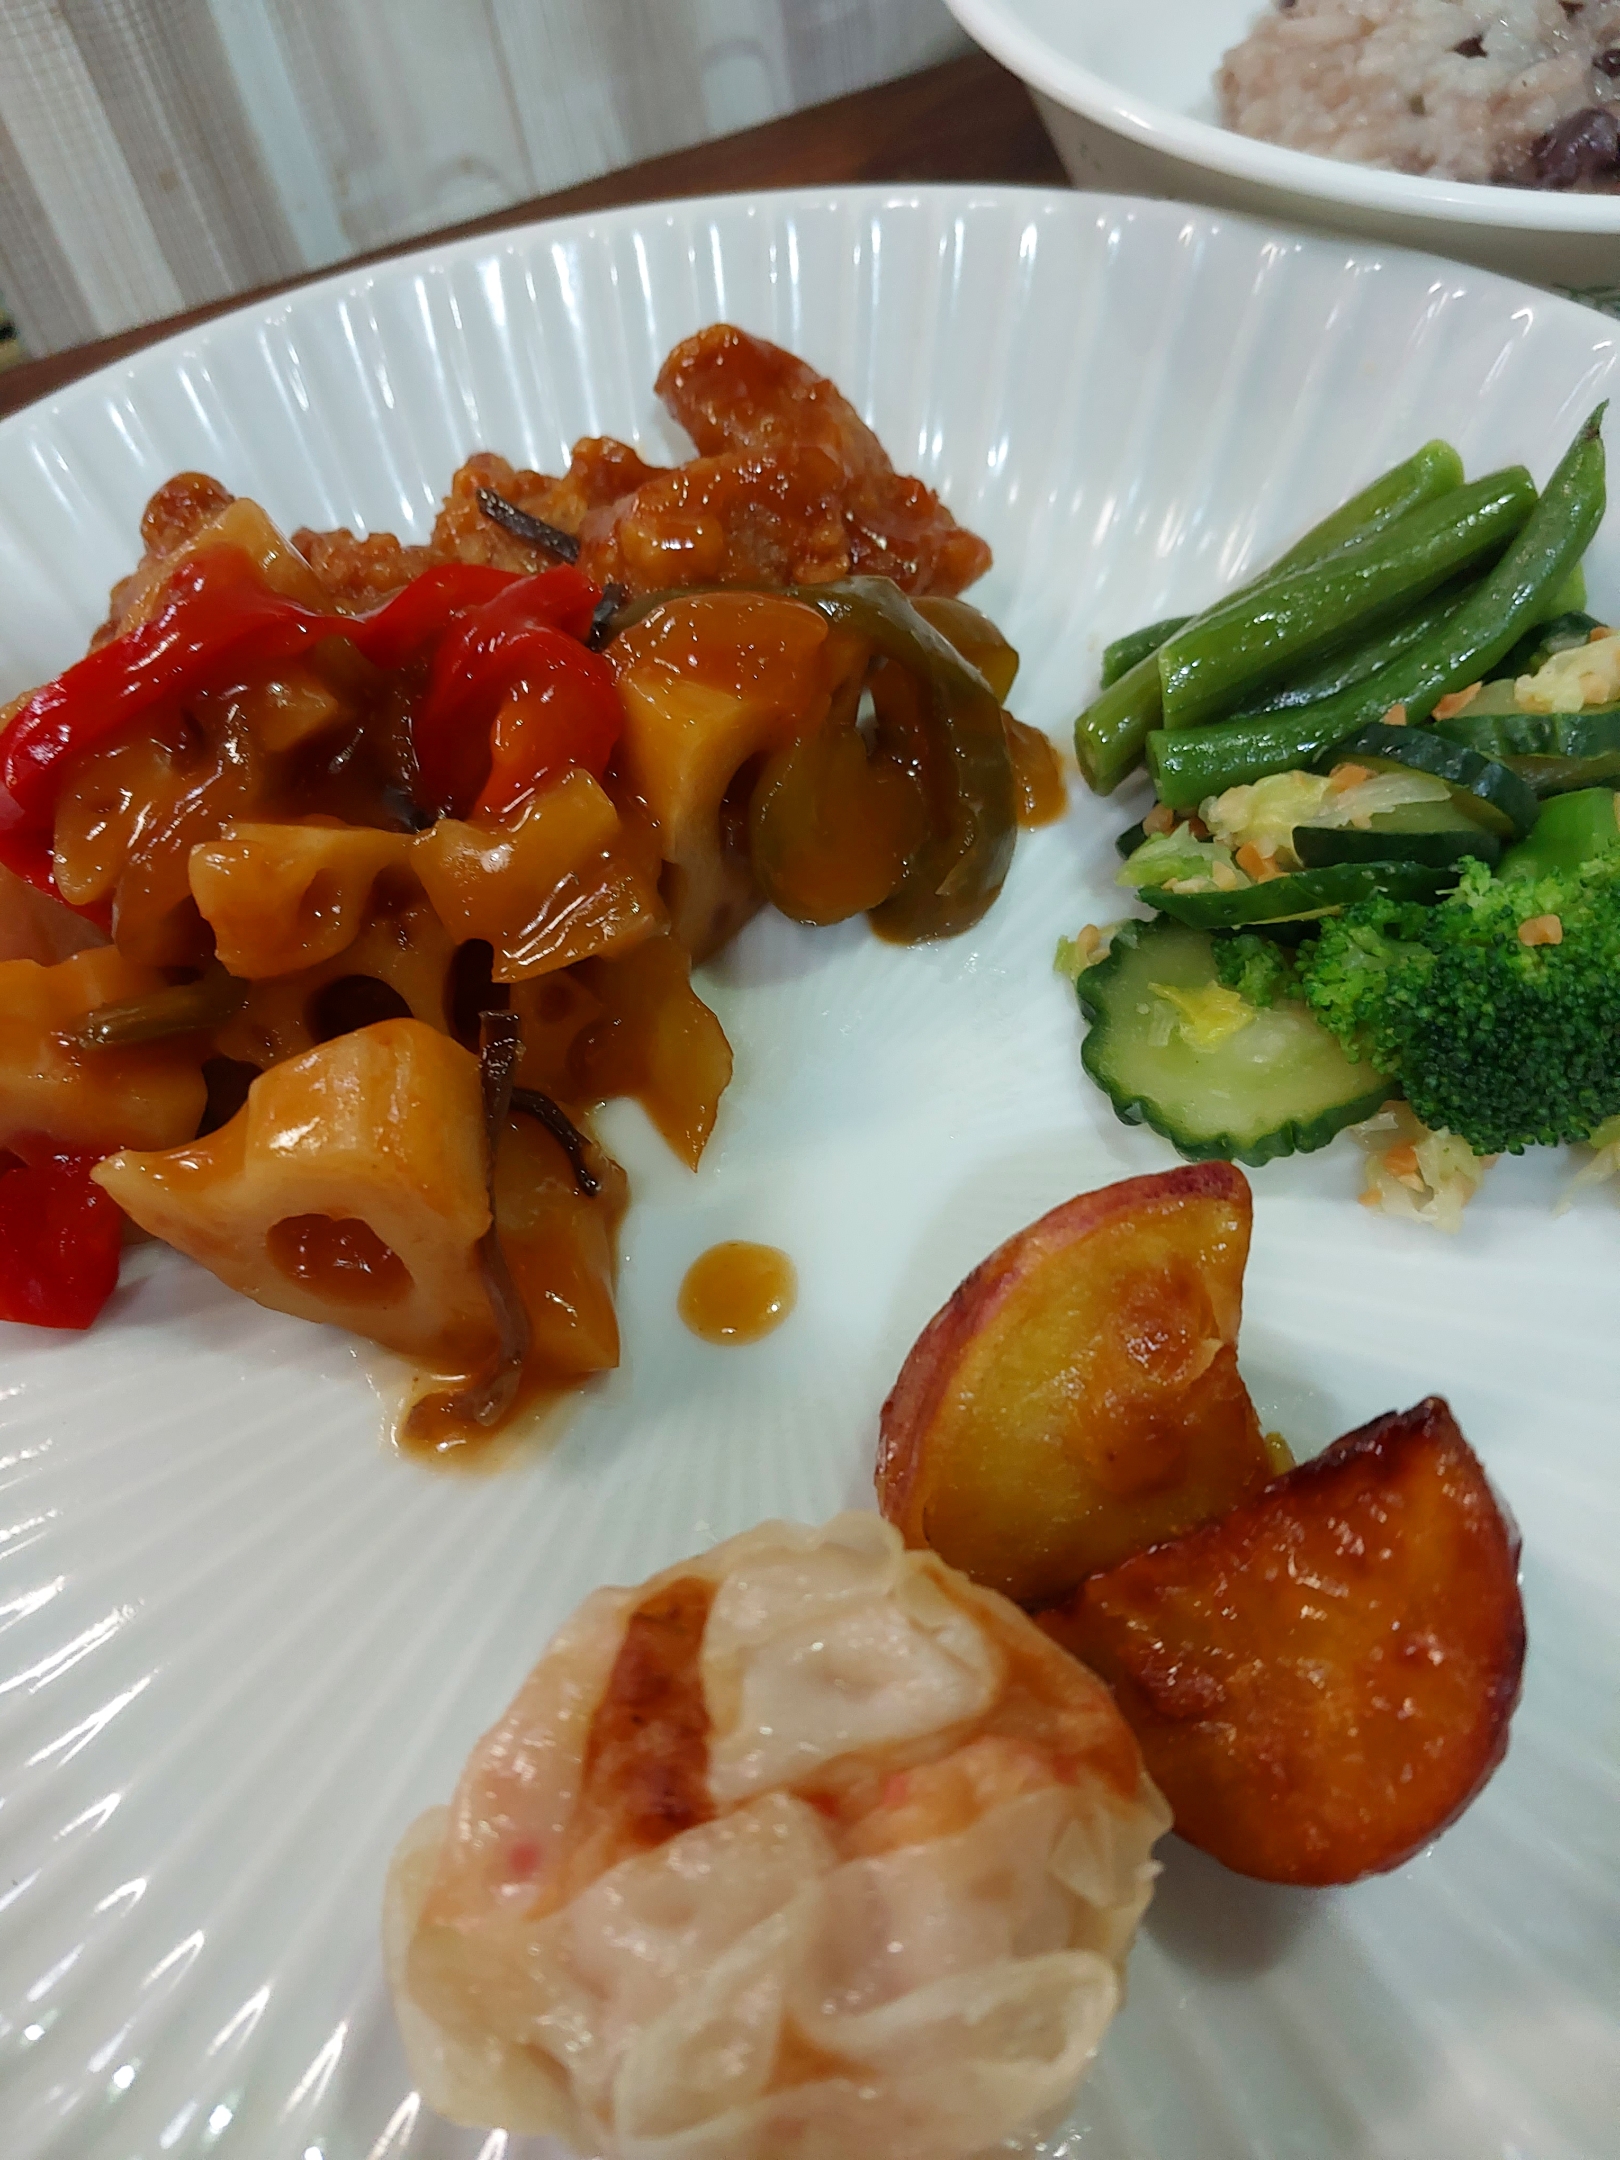 いつどやの夕食😊

酢豚
🦀焼売
和風野菜煮込み

小豆粥